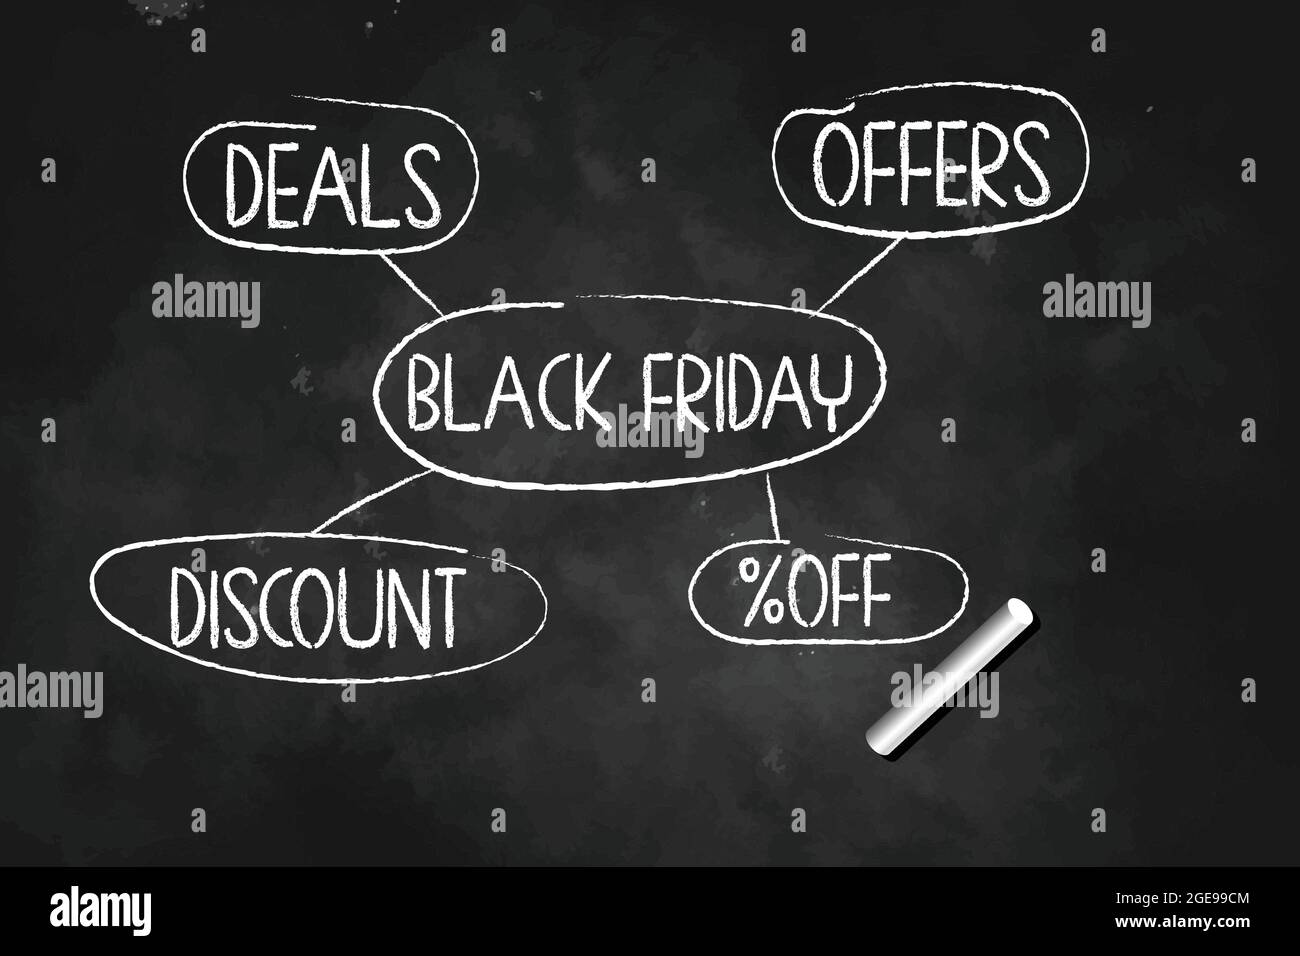 Black Friday bietet Angebote Rabatt auf Chart gezeichnet mit Kreide auf Blackboard Vektorgrafik Stock Vektor